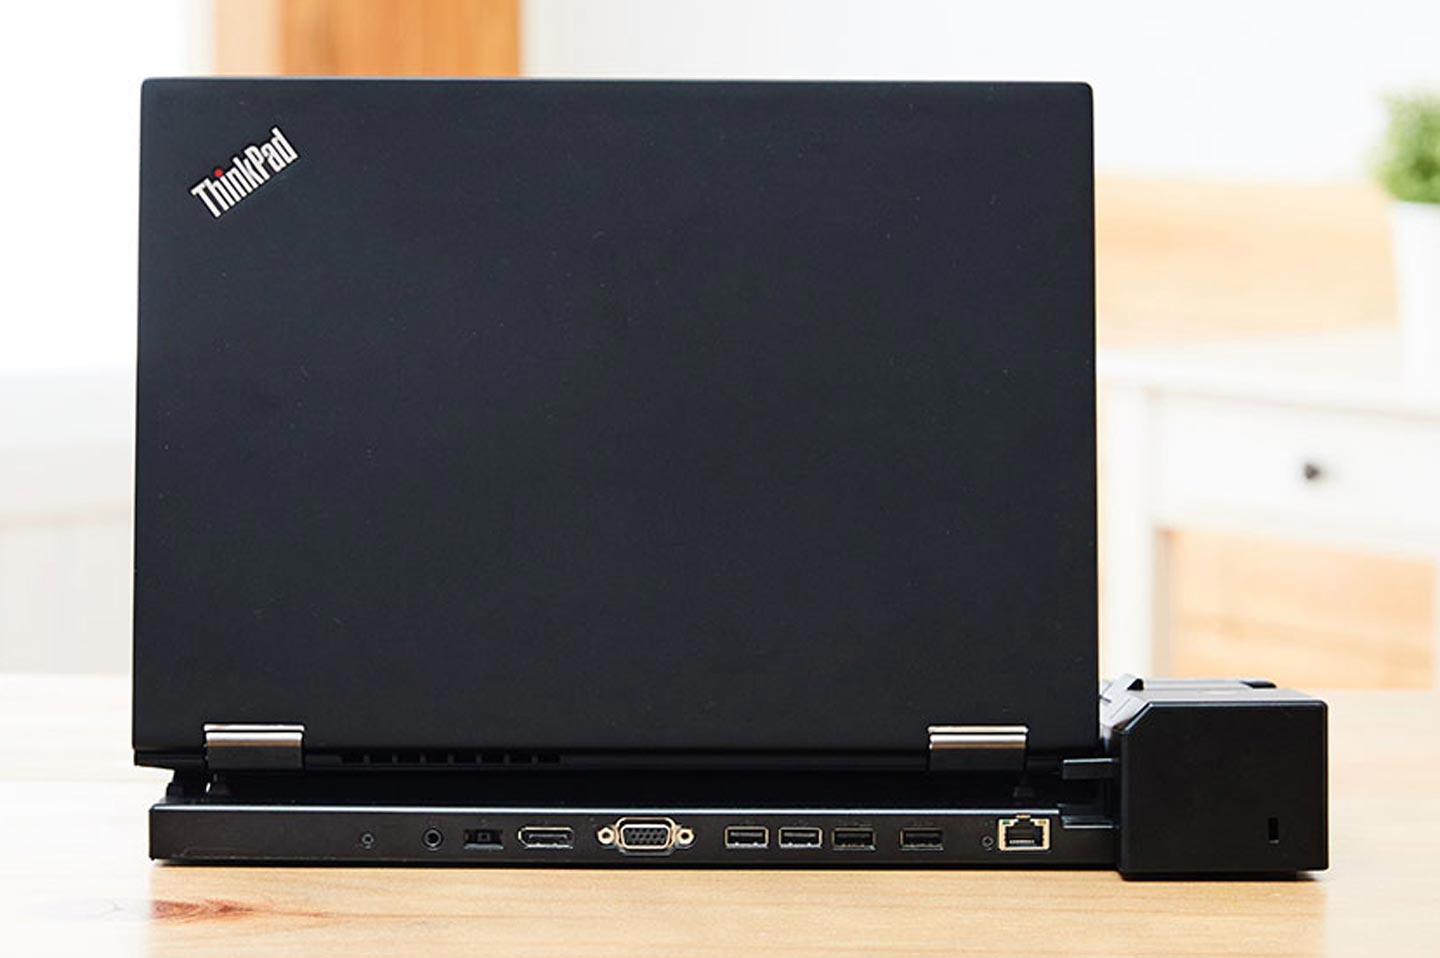 ThinkPad 基本擴充基座為底座式設計，提供支援的 ThinkPad 更多擴充 I/O 埠。